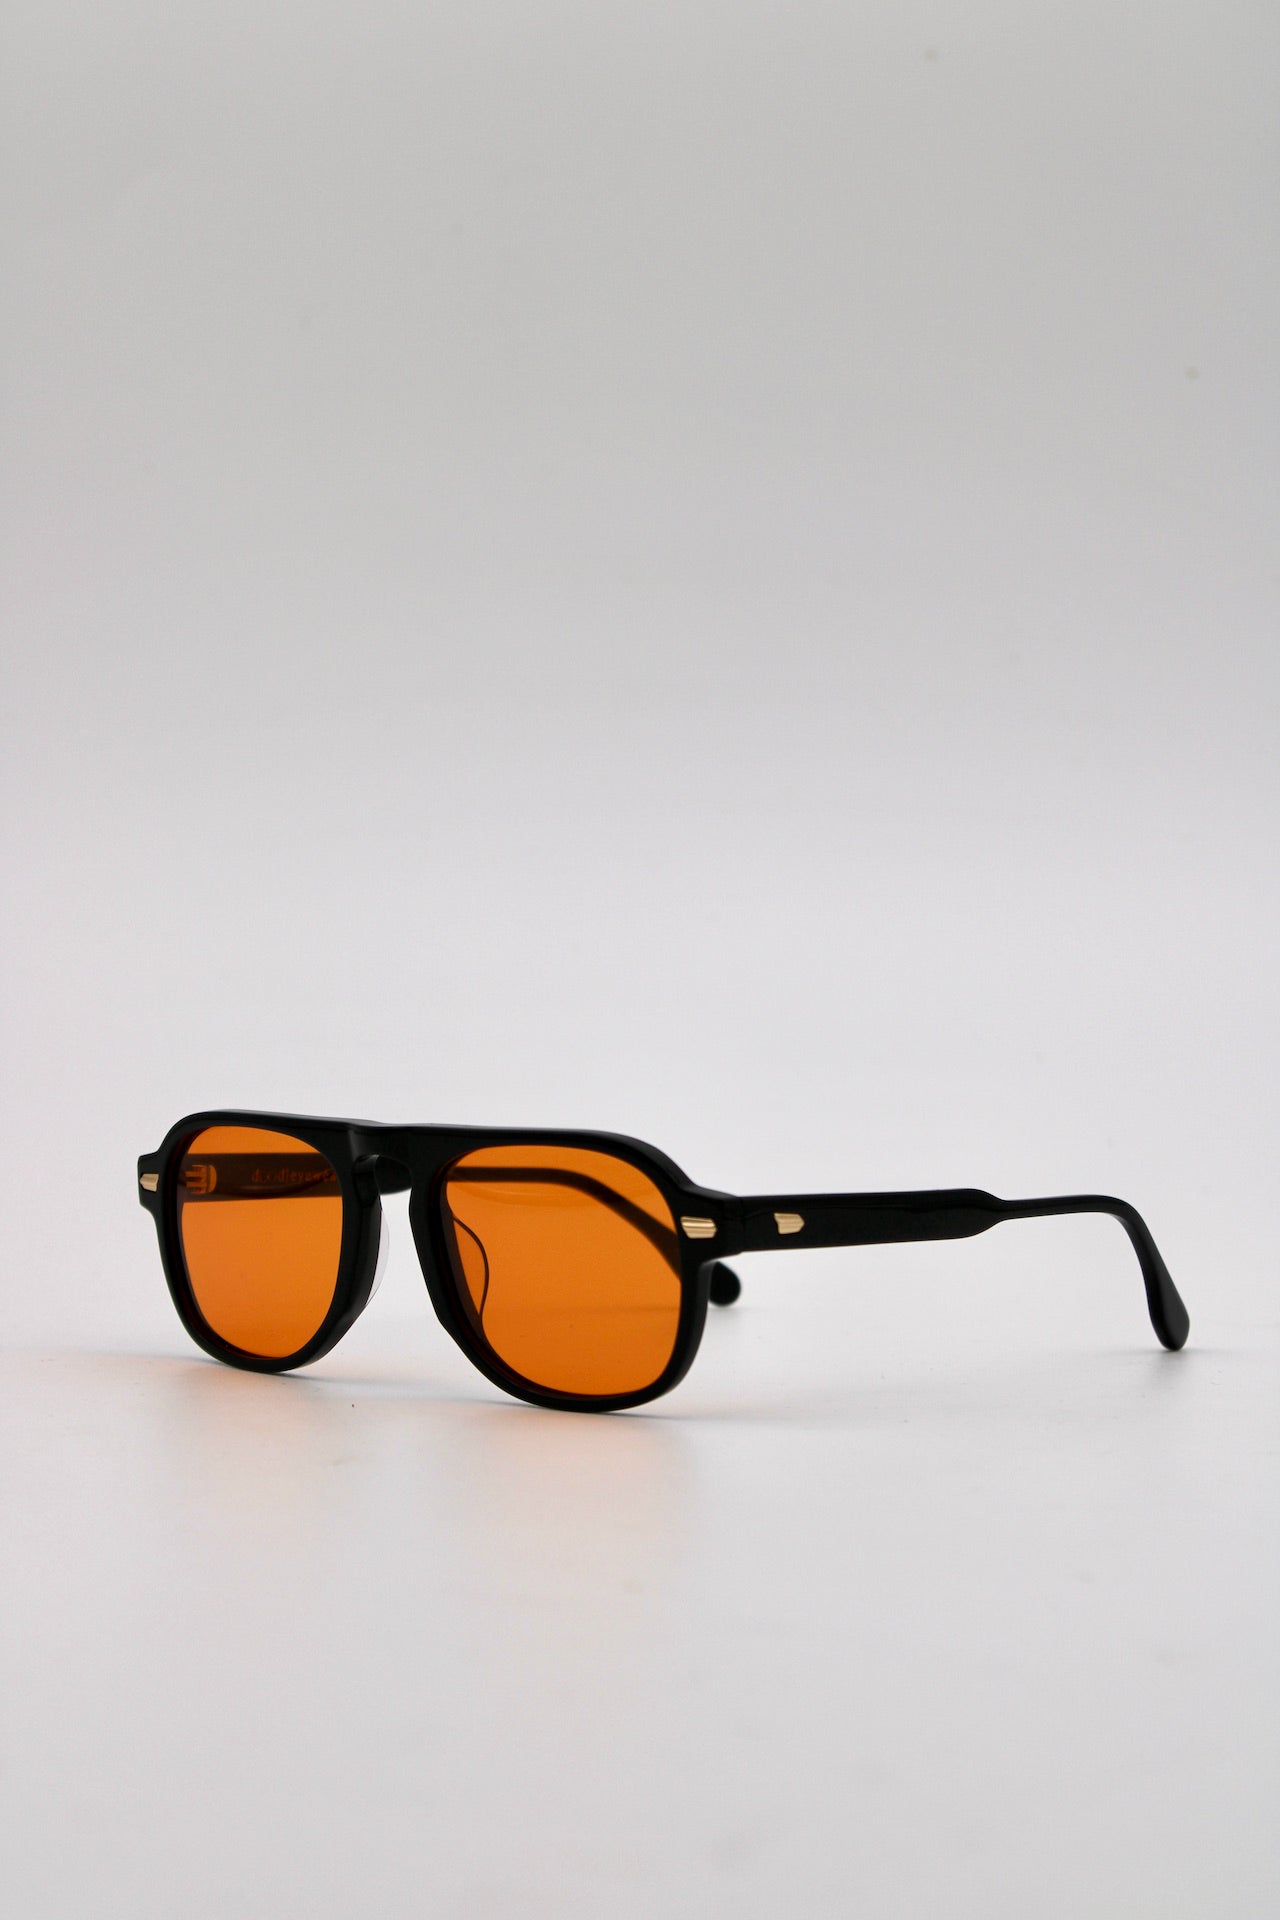 346 Originals Black Frame with Unique Orange Lenses